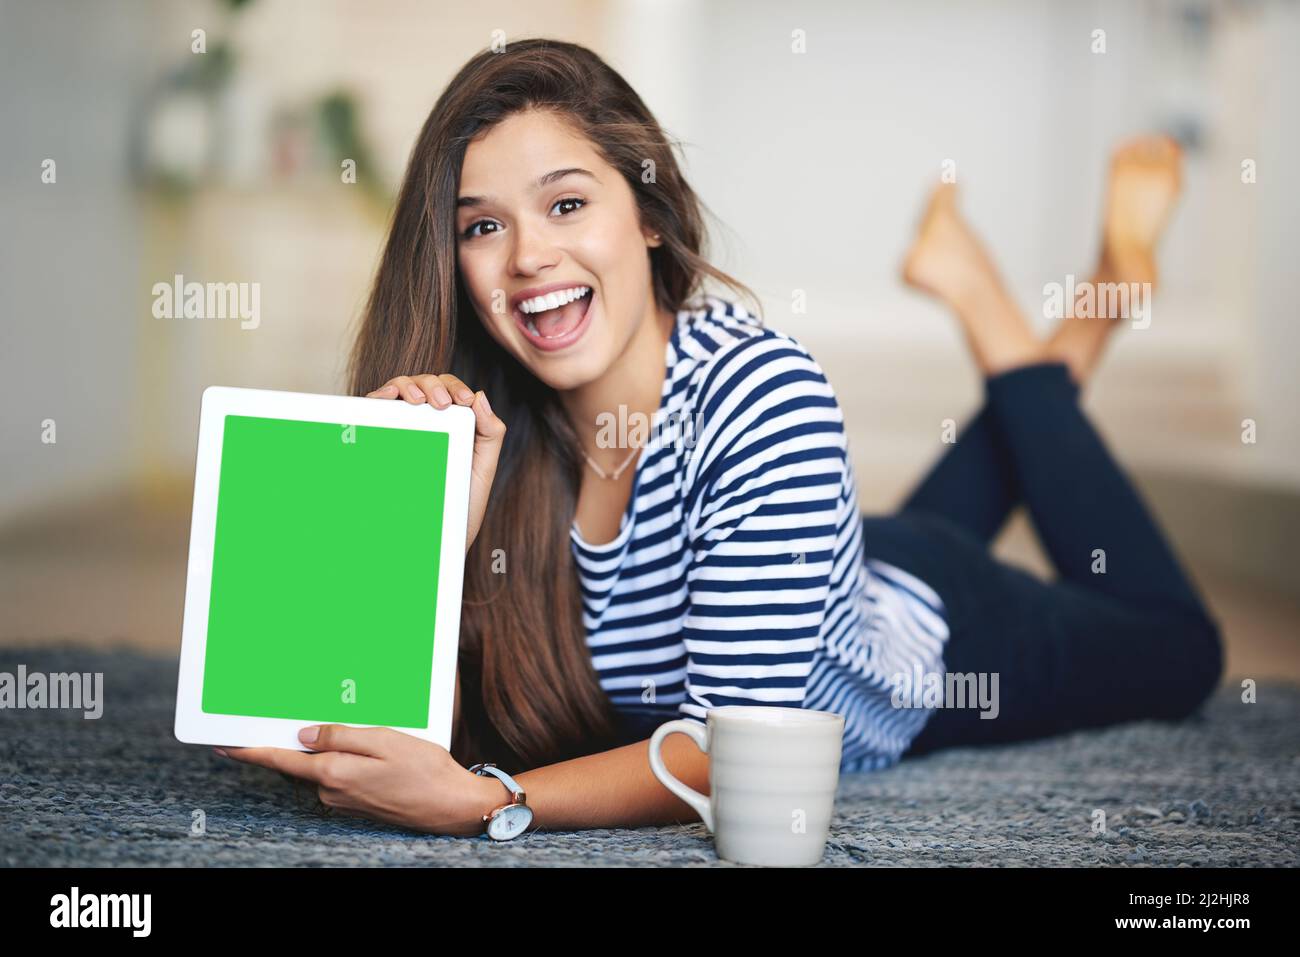 C'est un site que vous allez visiter. Portrait d'une jeune femme ecstatique couchée sur le sol à la maison tenant une tablette numérique avec un chroma Banque D'Images